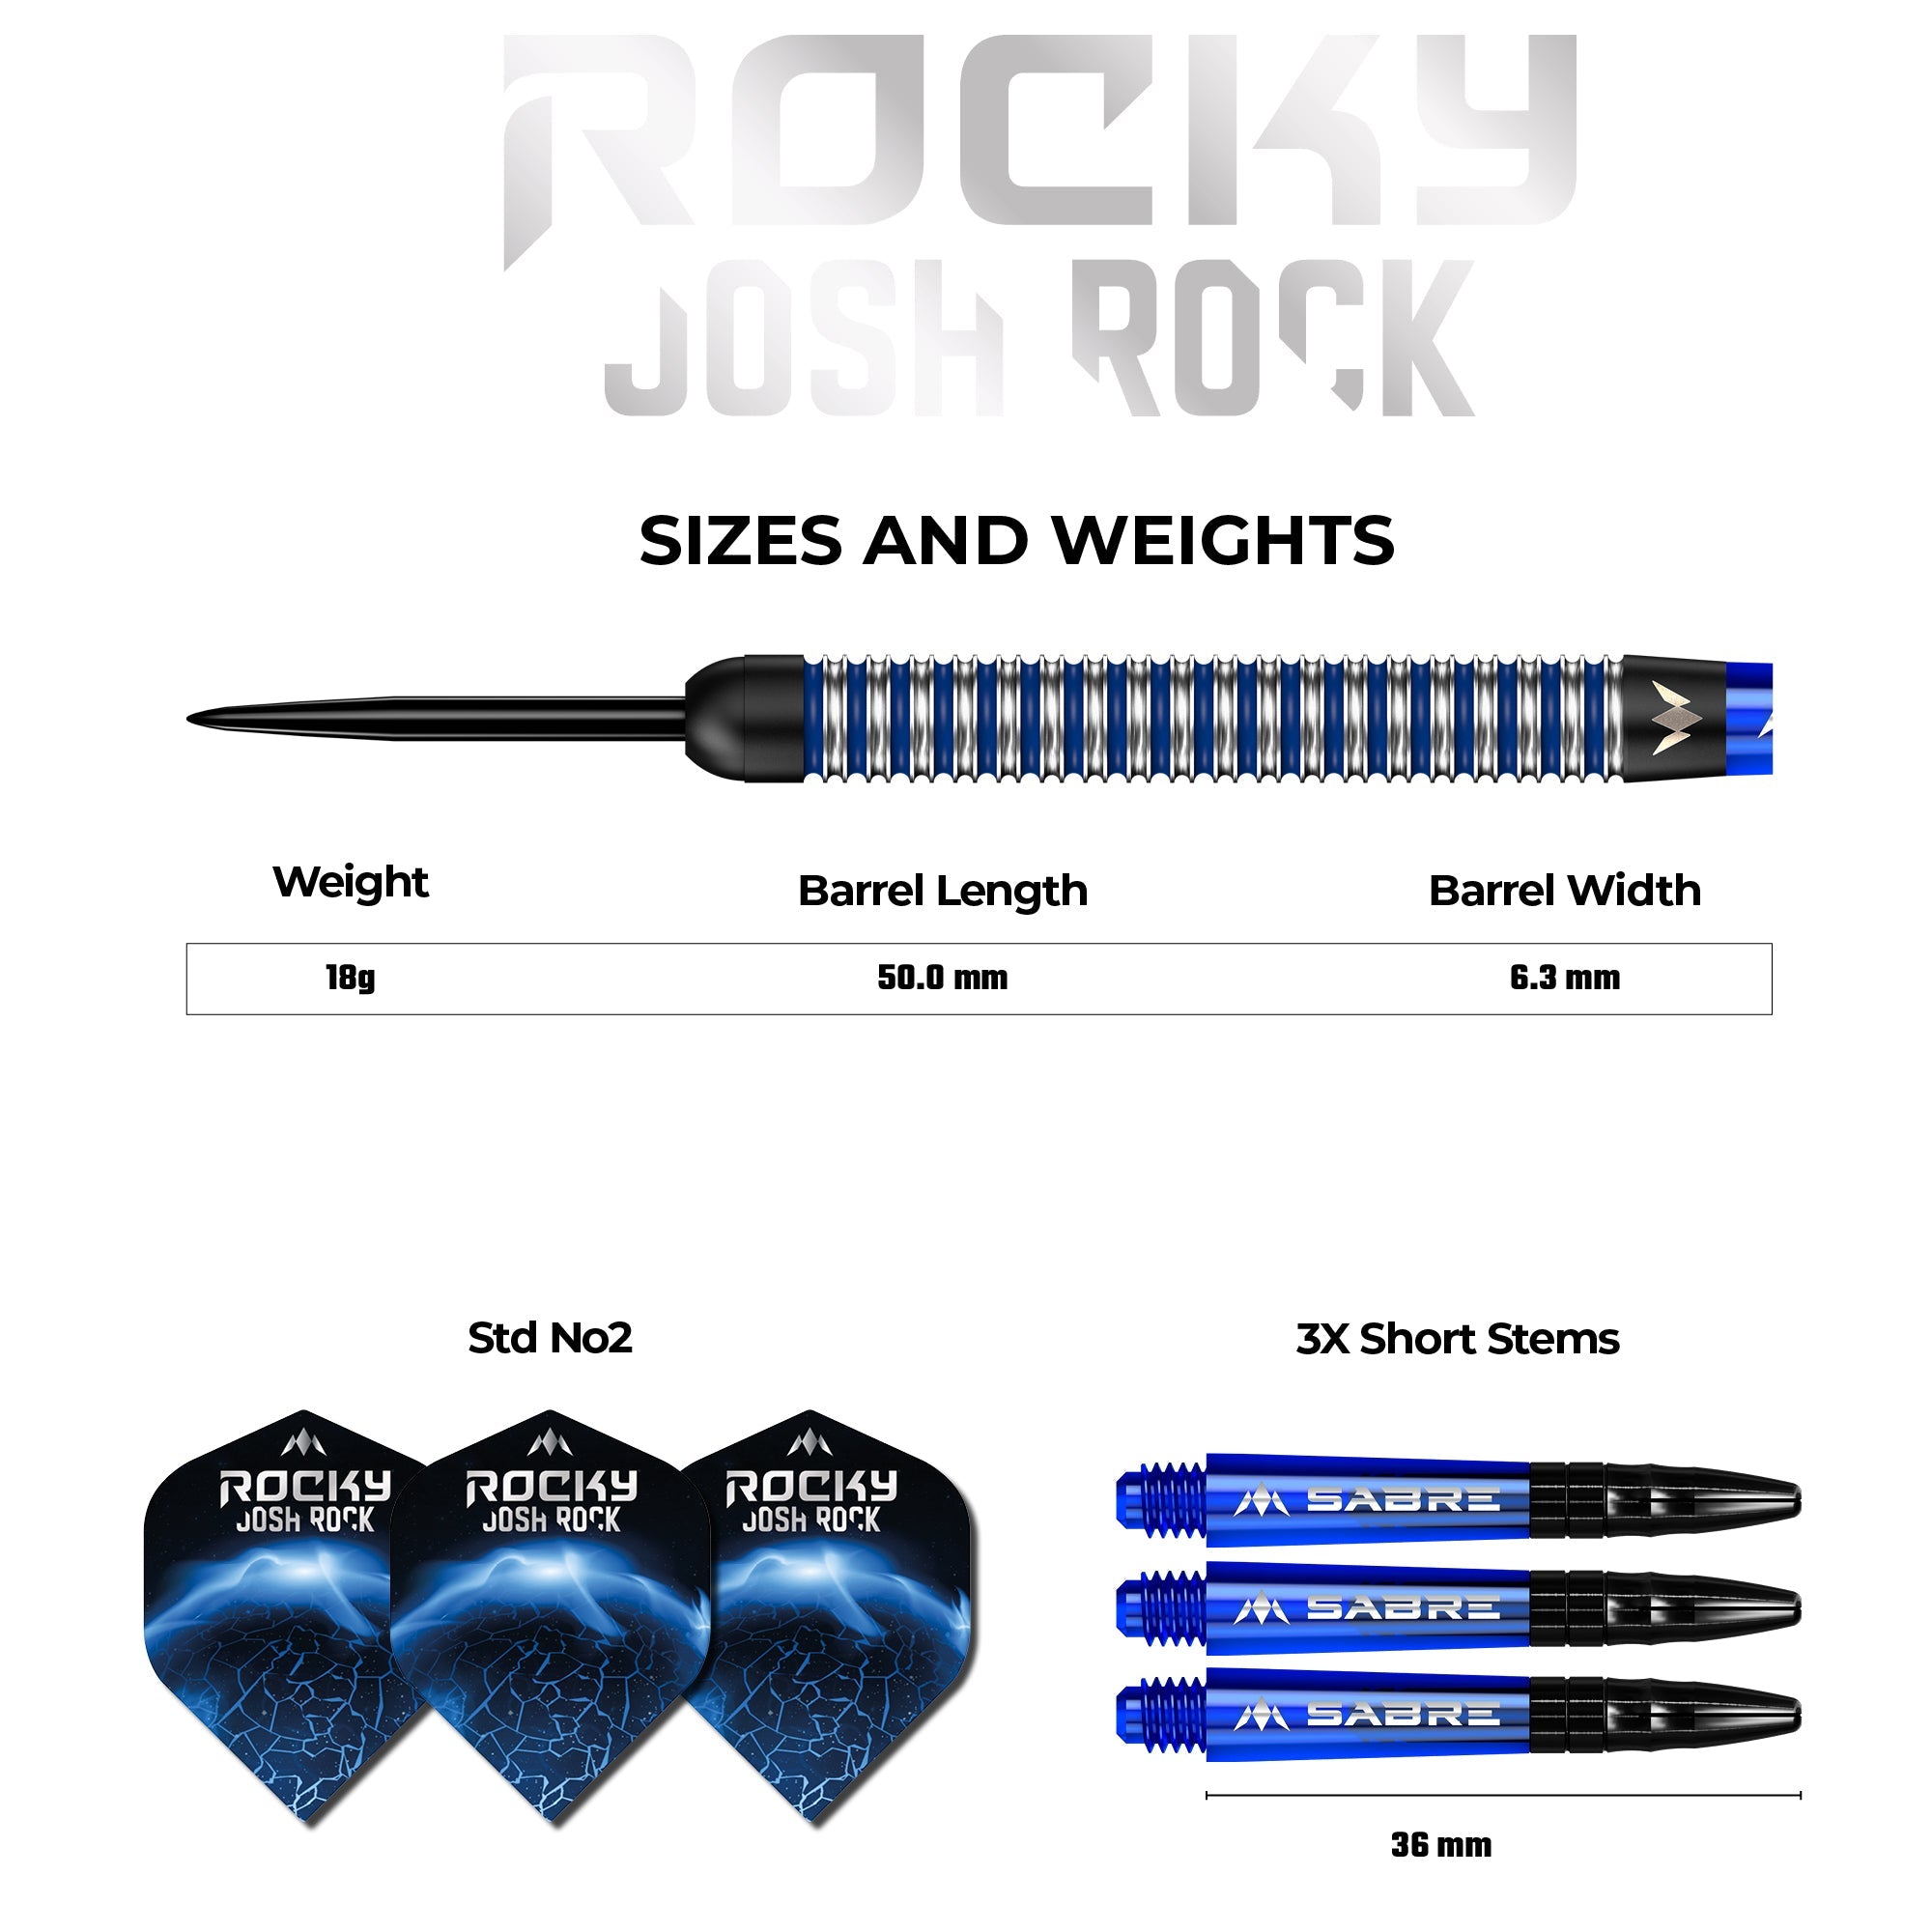 Mission Josh Rock Darts v1 - Steel Tip - The Rock - Black & Blue